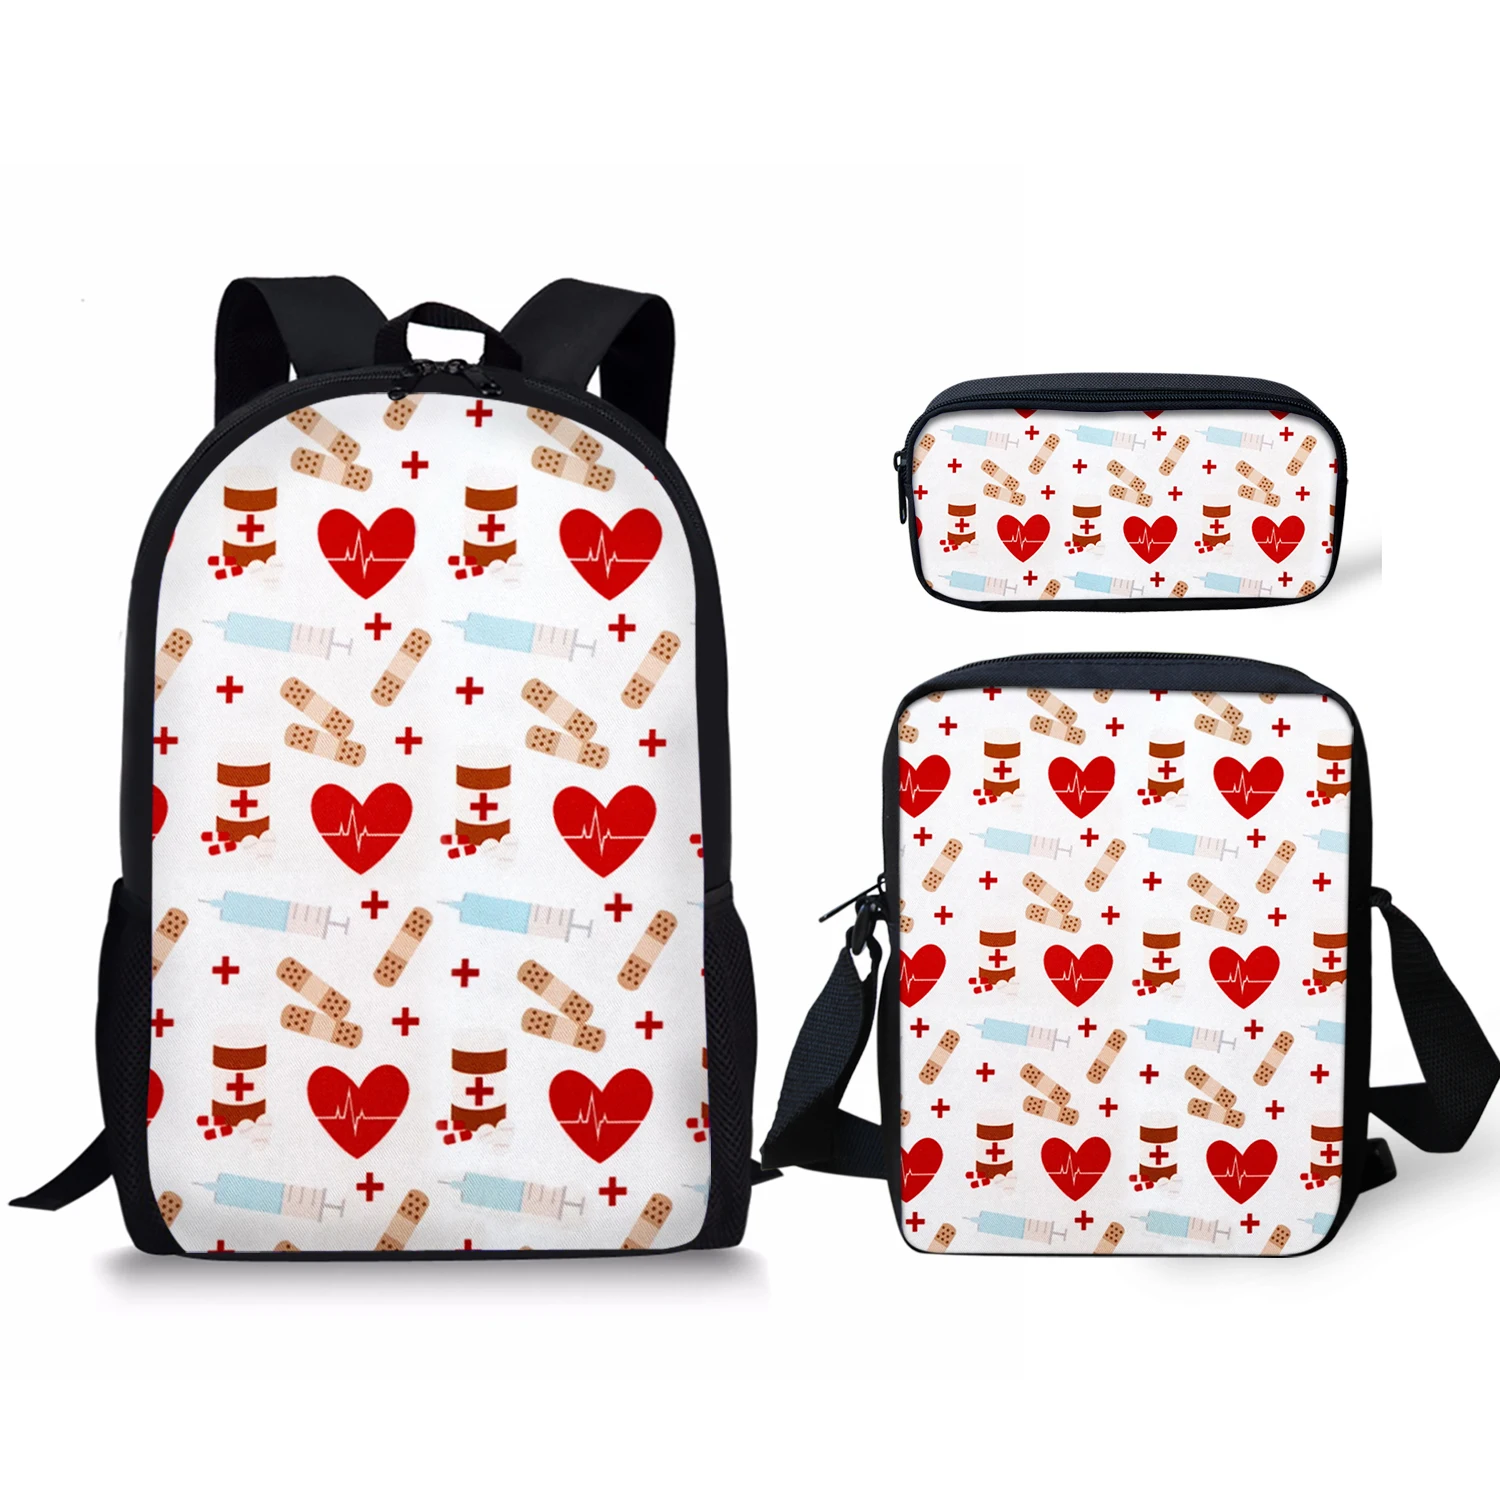 Медицинский инструмент новый 3 шт./набор, школьные сумки, прочный рюкзак для ежедневного путешествия, скалолазания, модный подарок на день р...